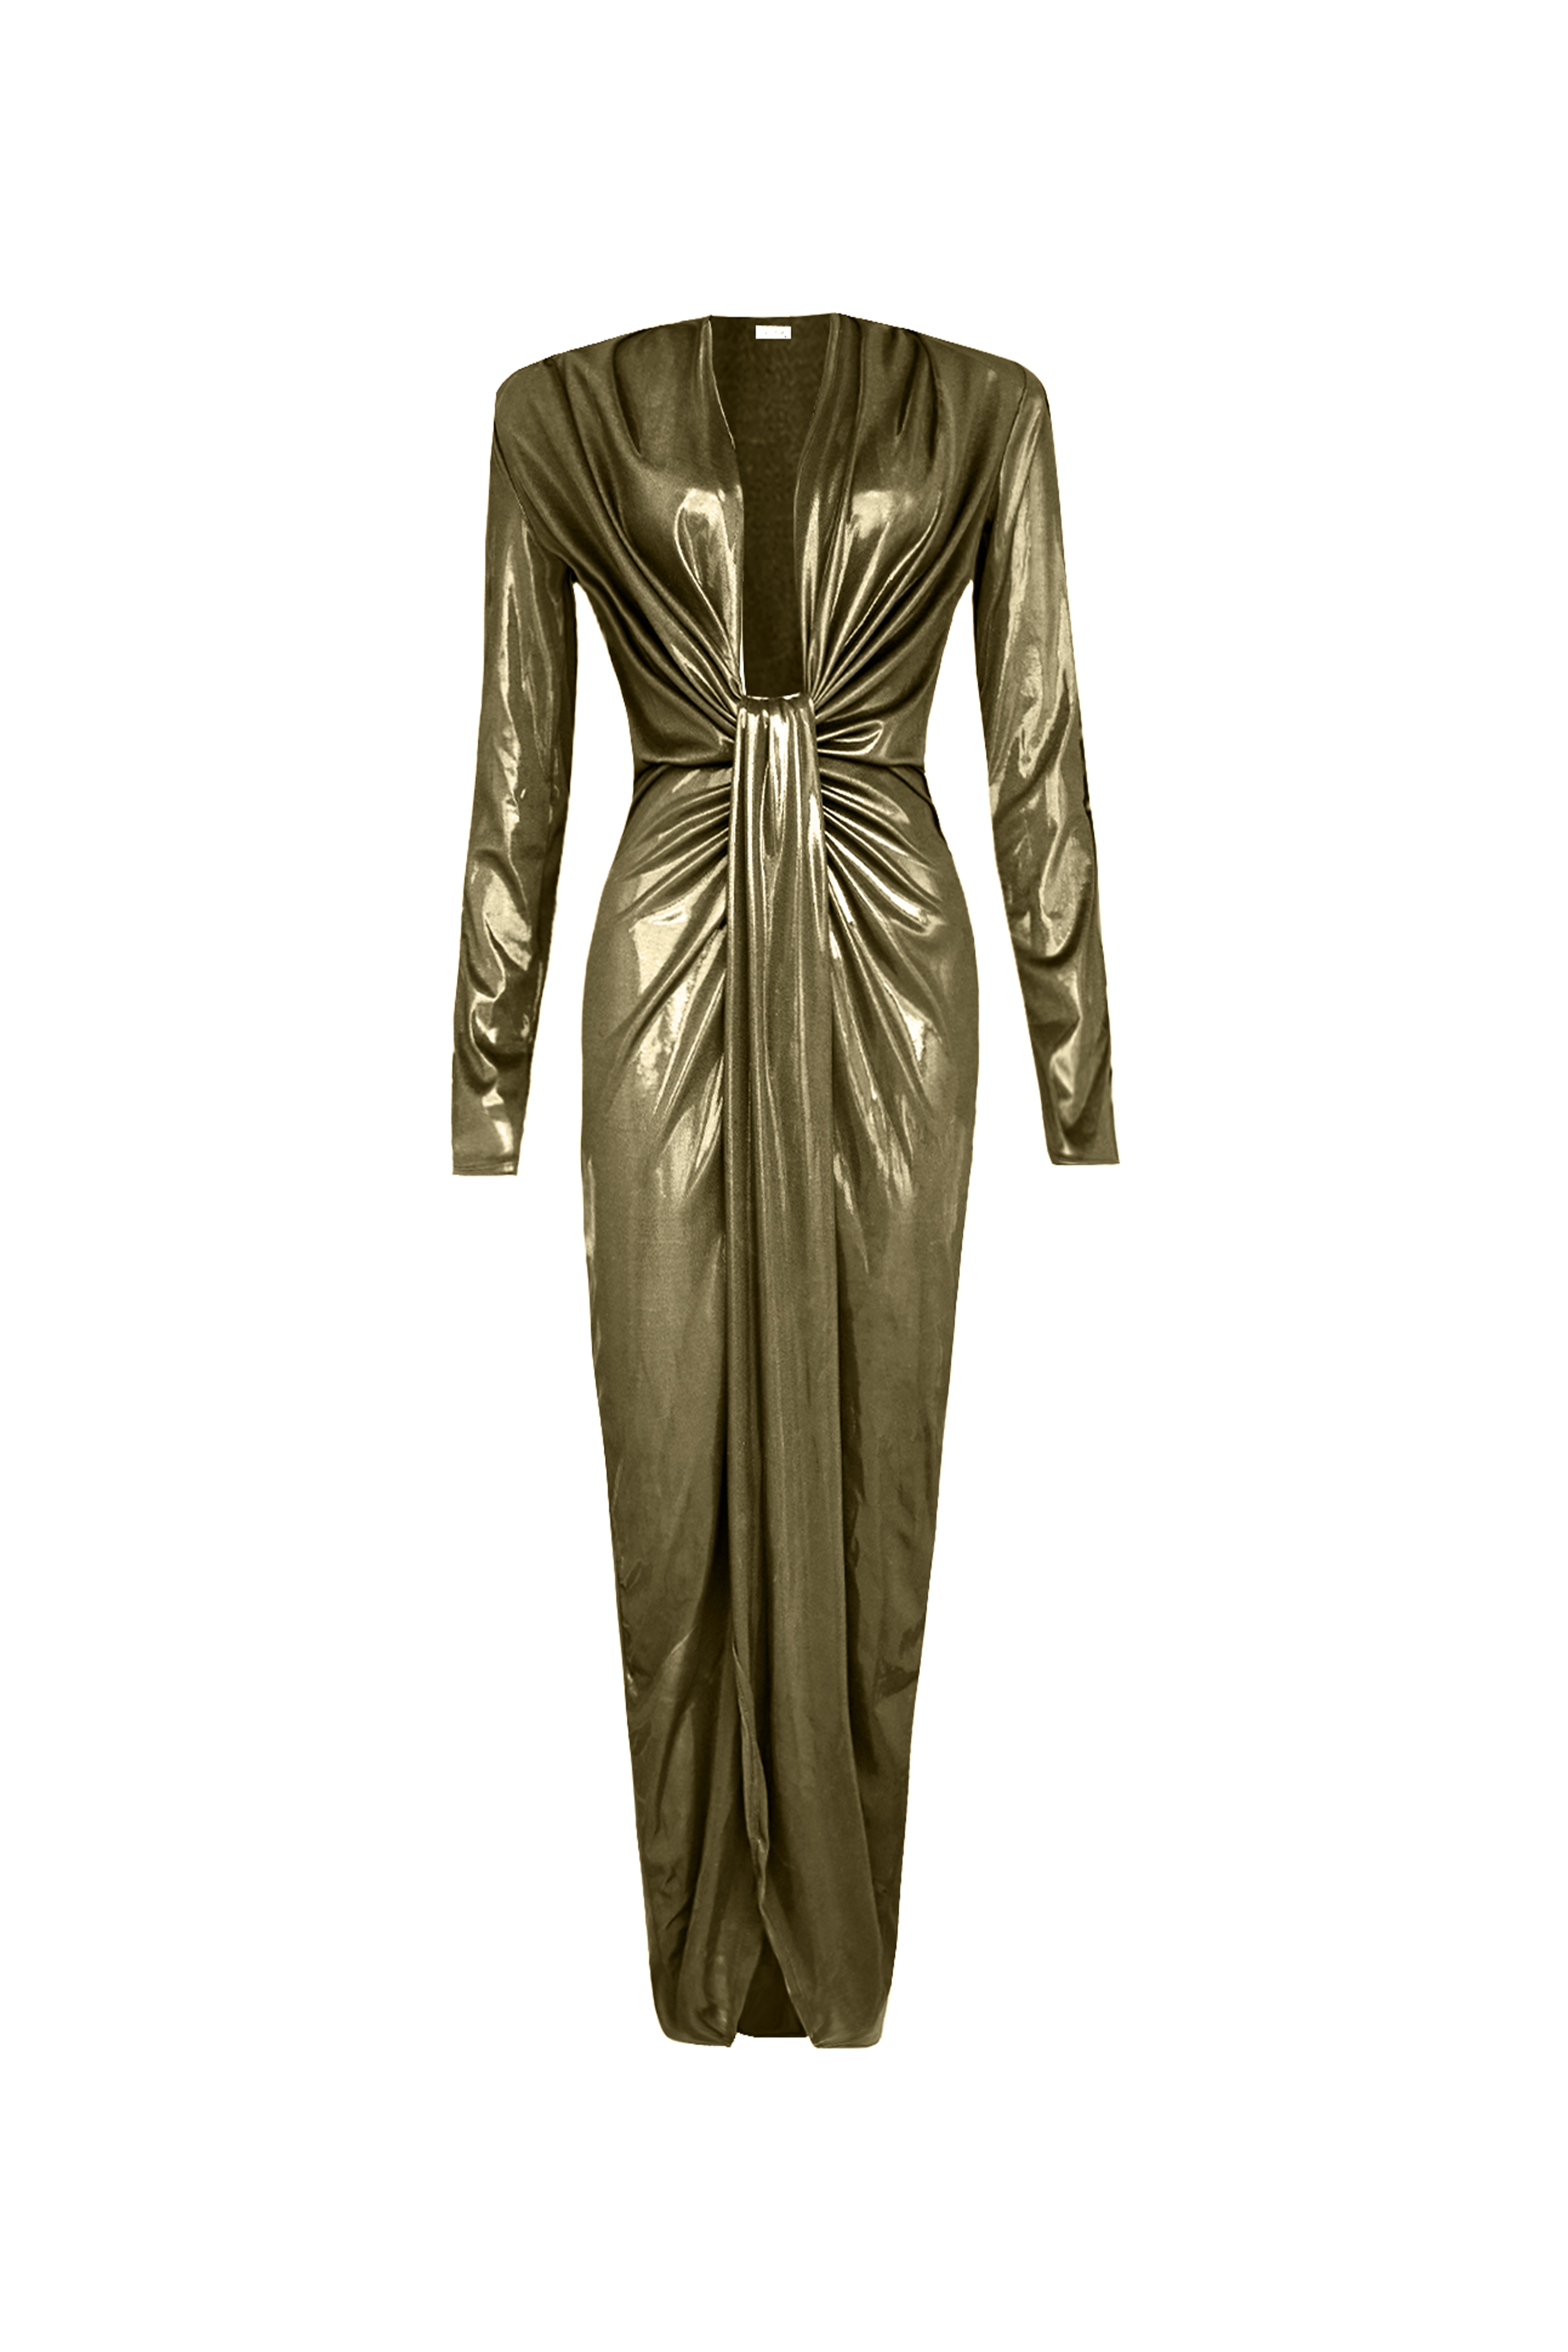 Heila Metallic Gold Dress